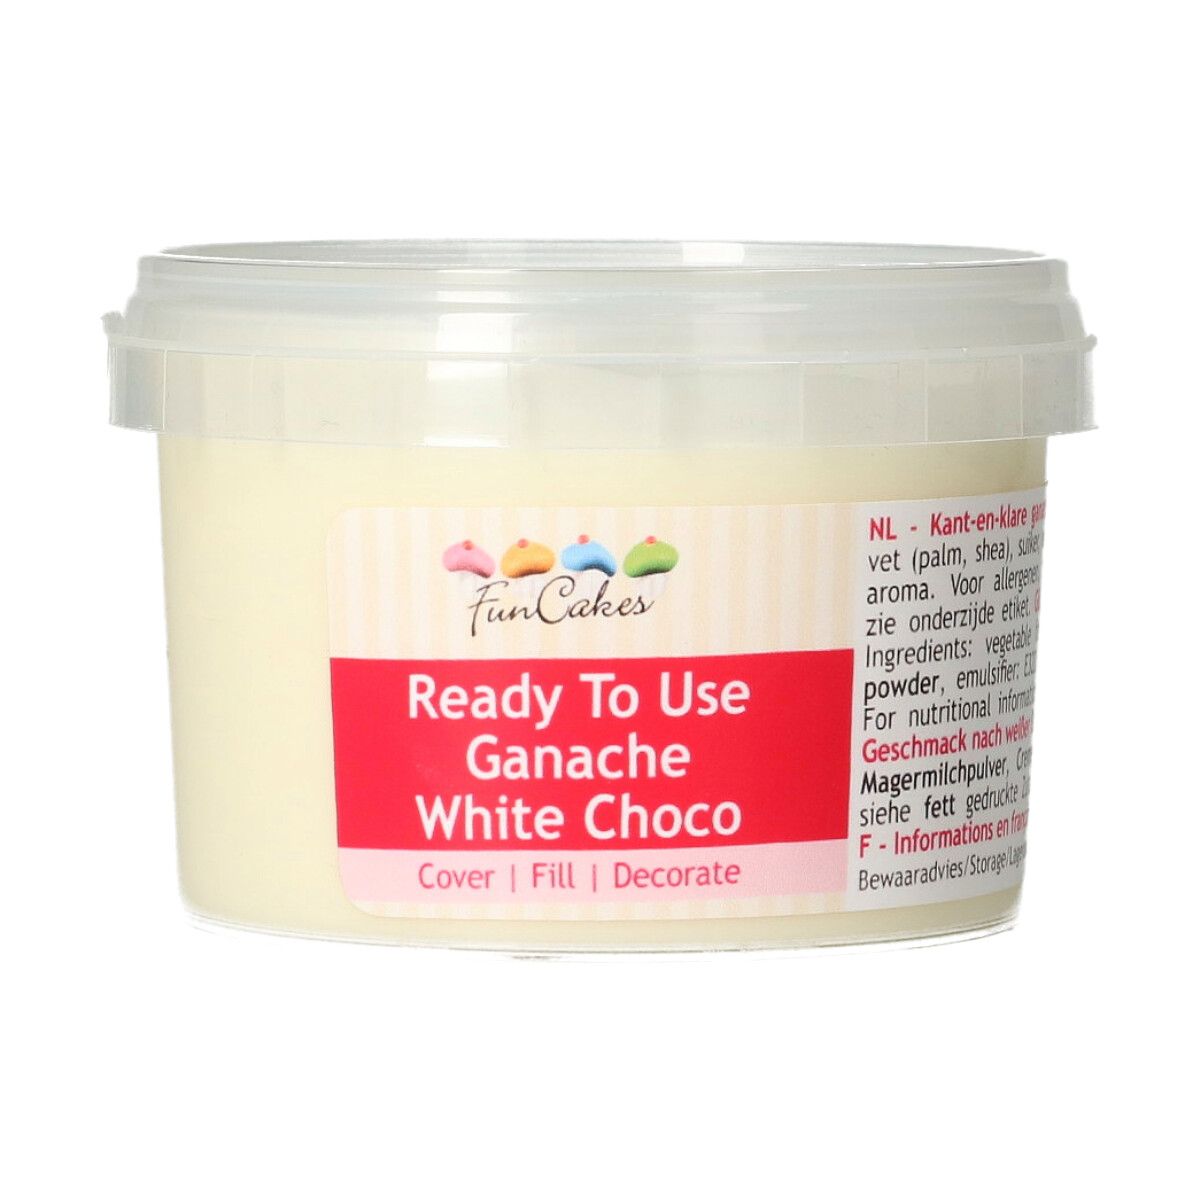 FUNCAKES READY TO USE GANACHE WHITE CHOCO 260G